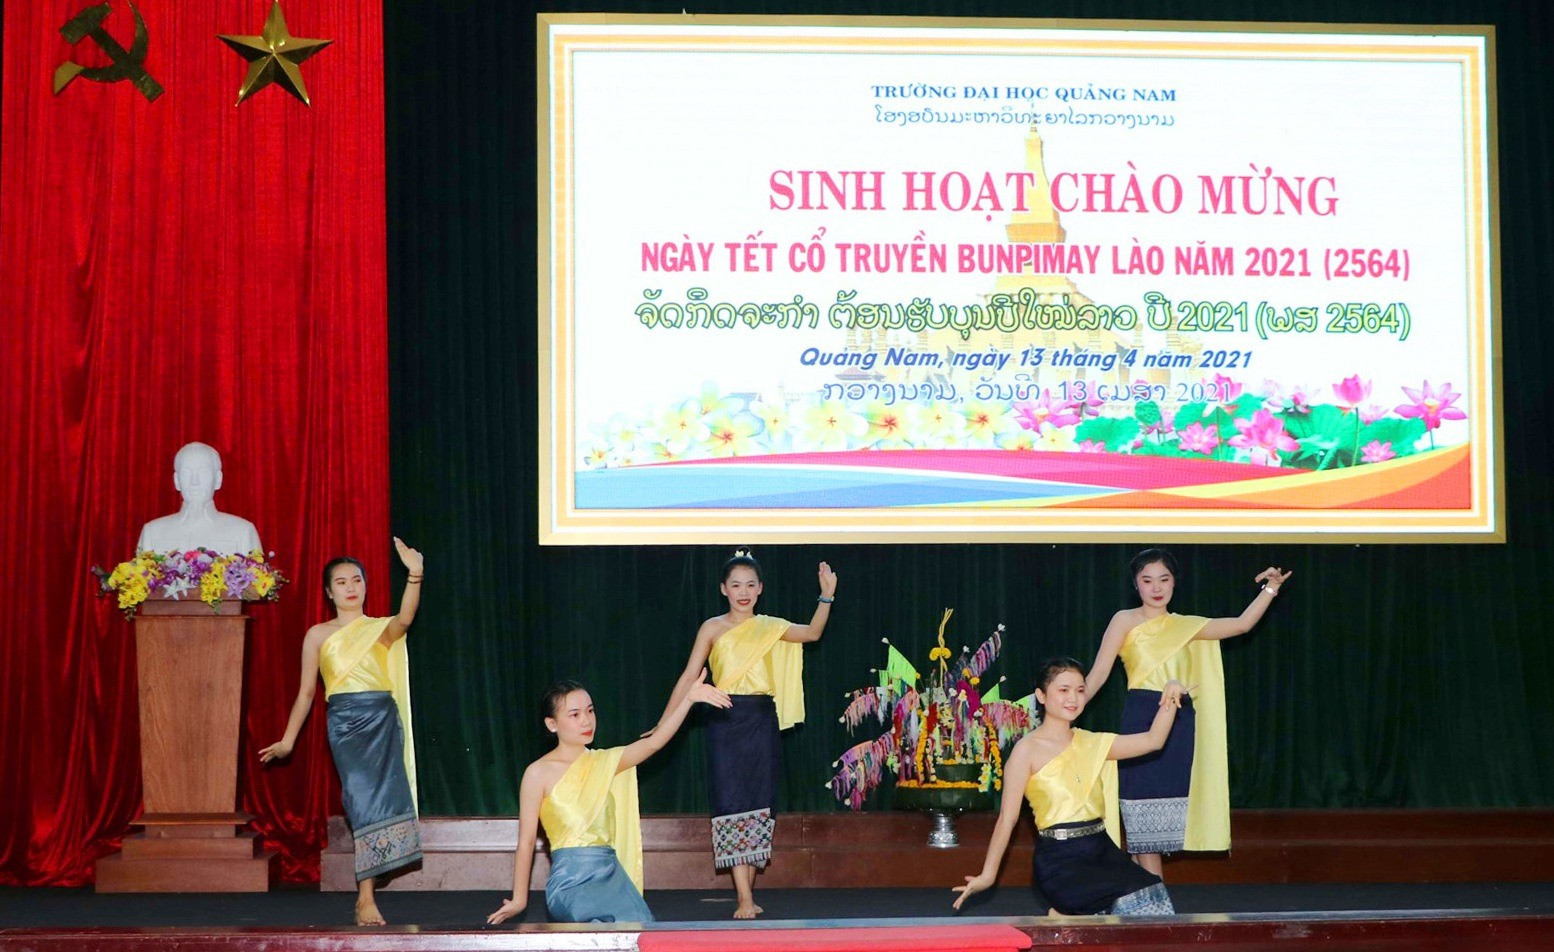 Điệu múa truyền thống của dân tộc Lào được biểu diễn tại lễ hội. Ảnh: CHÂU HÙNG